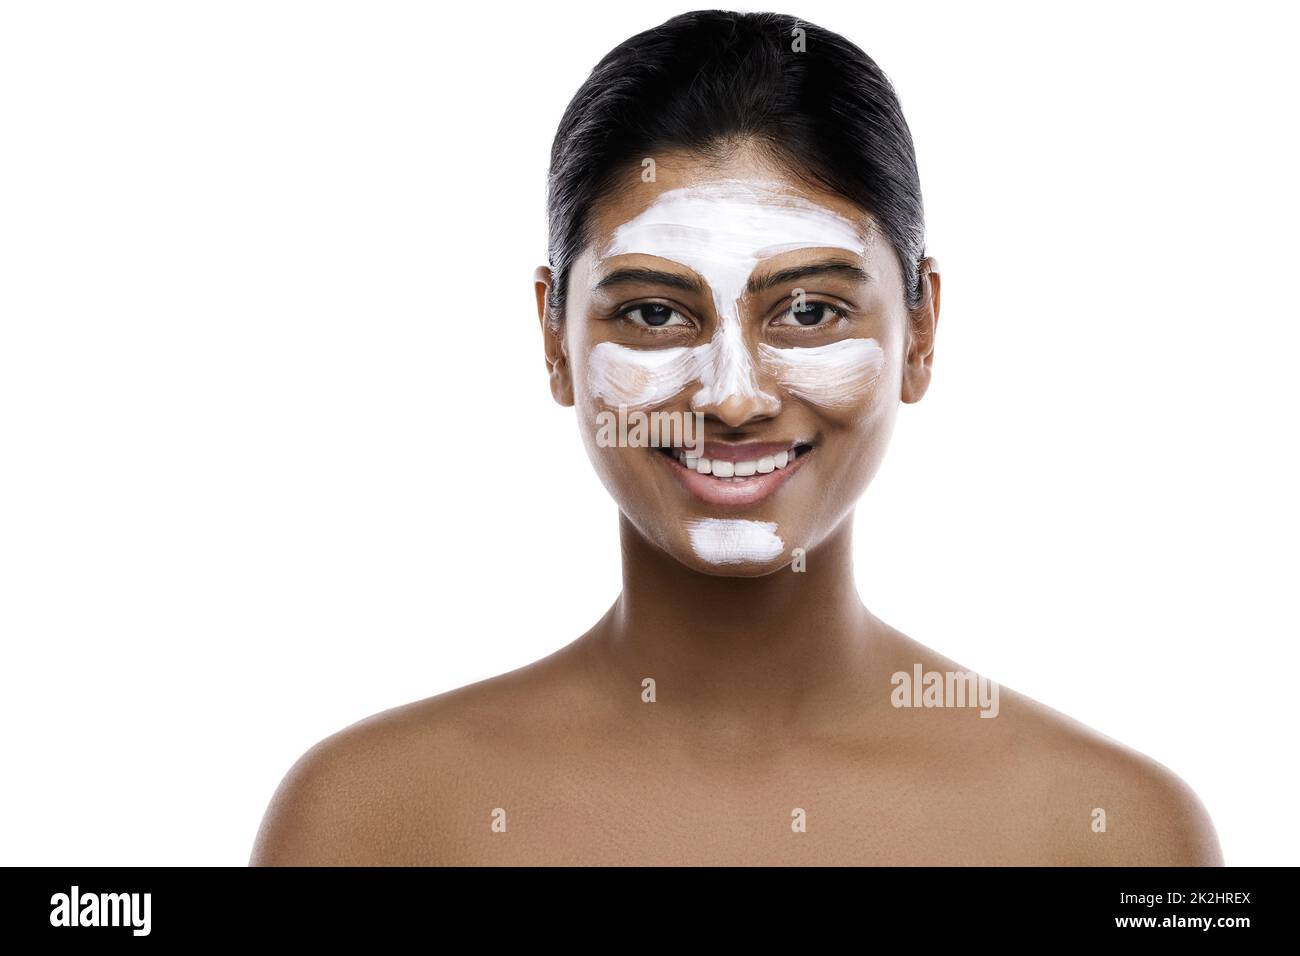 Jeune femme indienne avec un masque de nettoyage appliqué sur son visage Banque D'Images